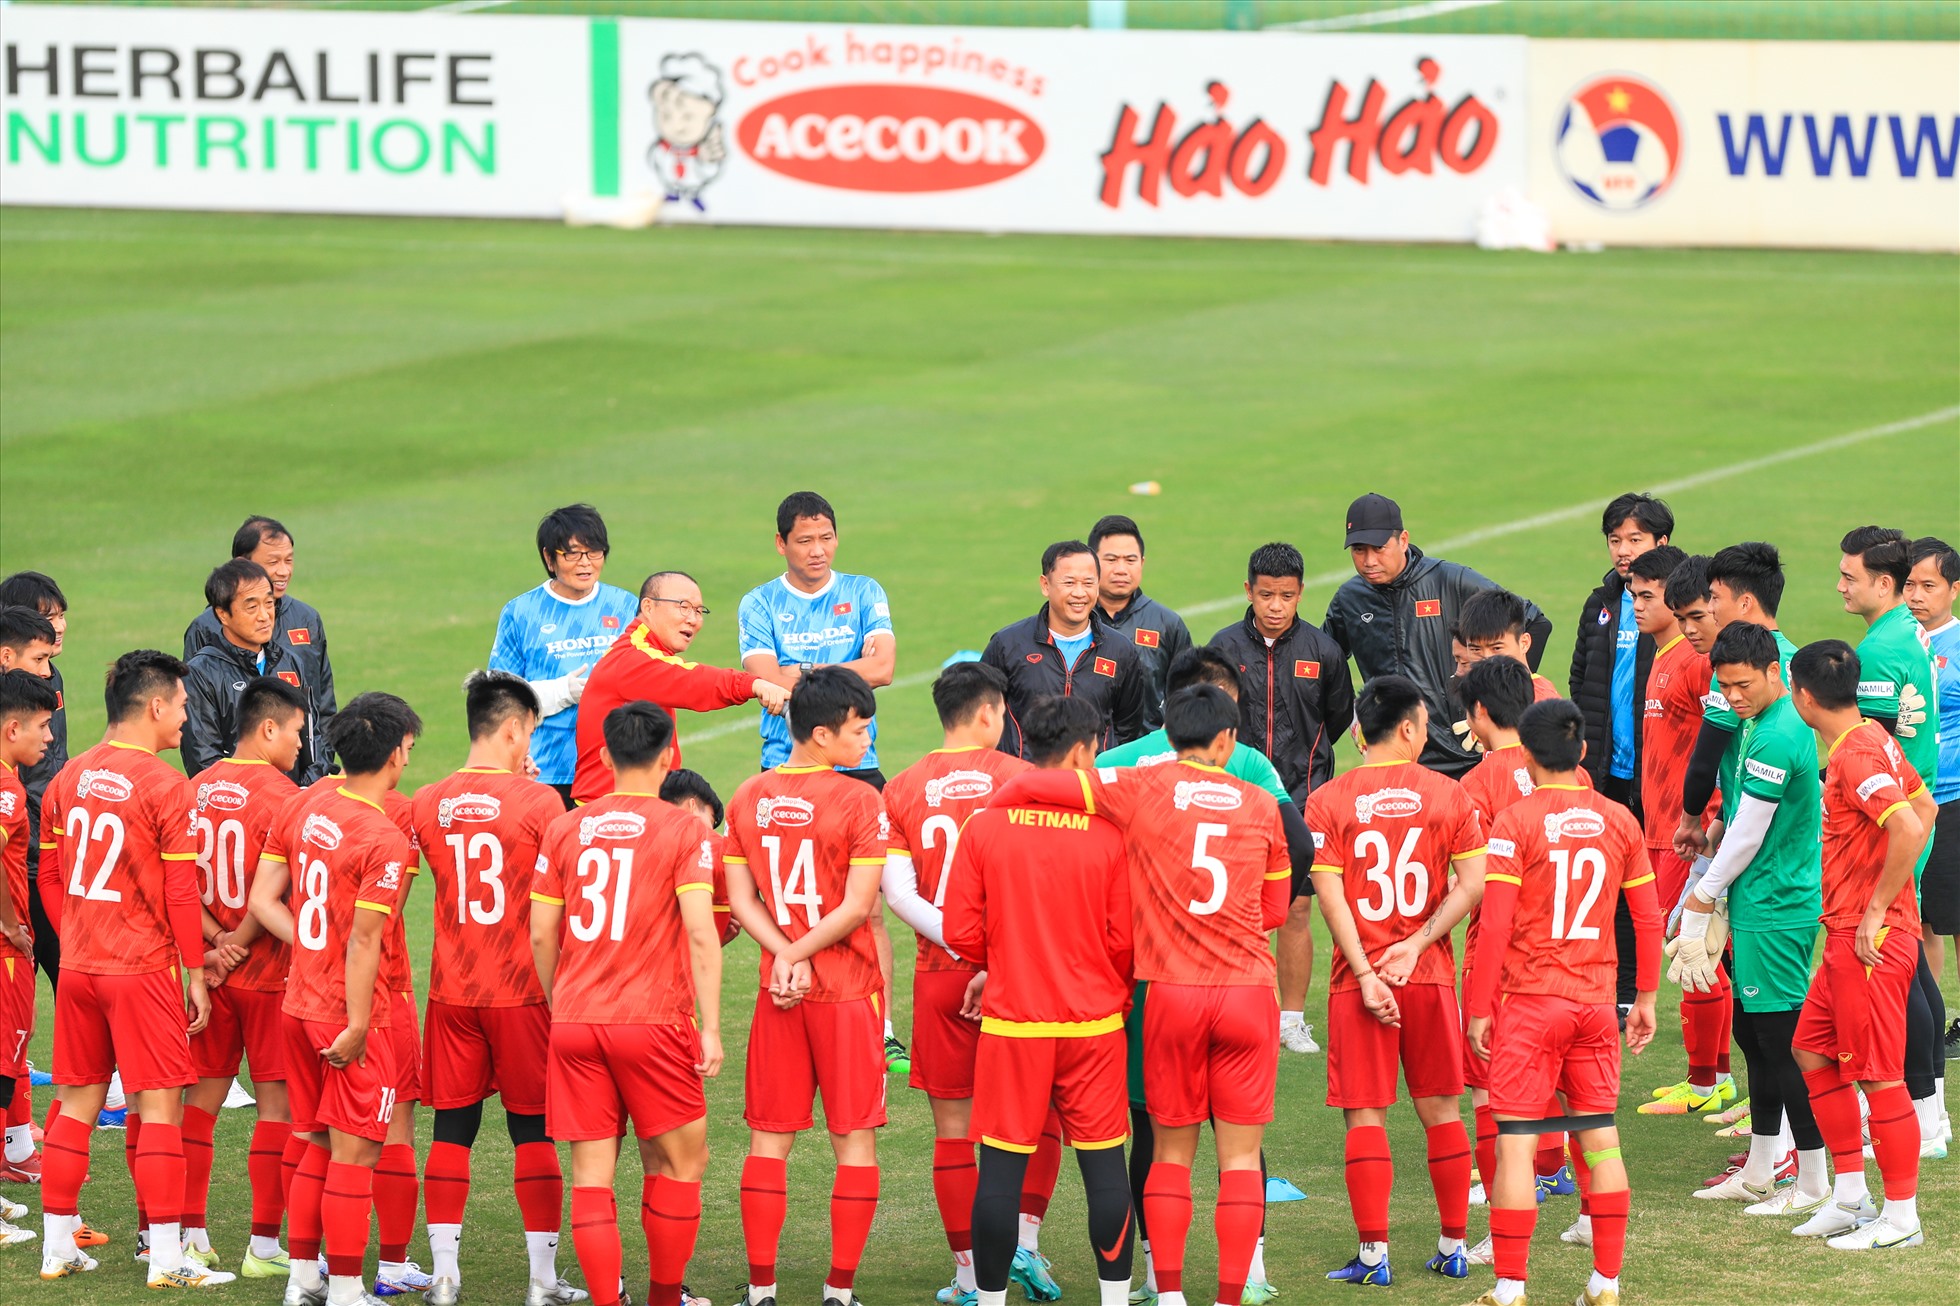 Chiều nay (11.12), đội tuyển Việt Nam đã có buổi tập đầu tiên tại Hà Nội sau khi trở về từ chuyến tập huấn ngắn ở Vũng Tàu.